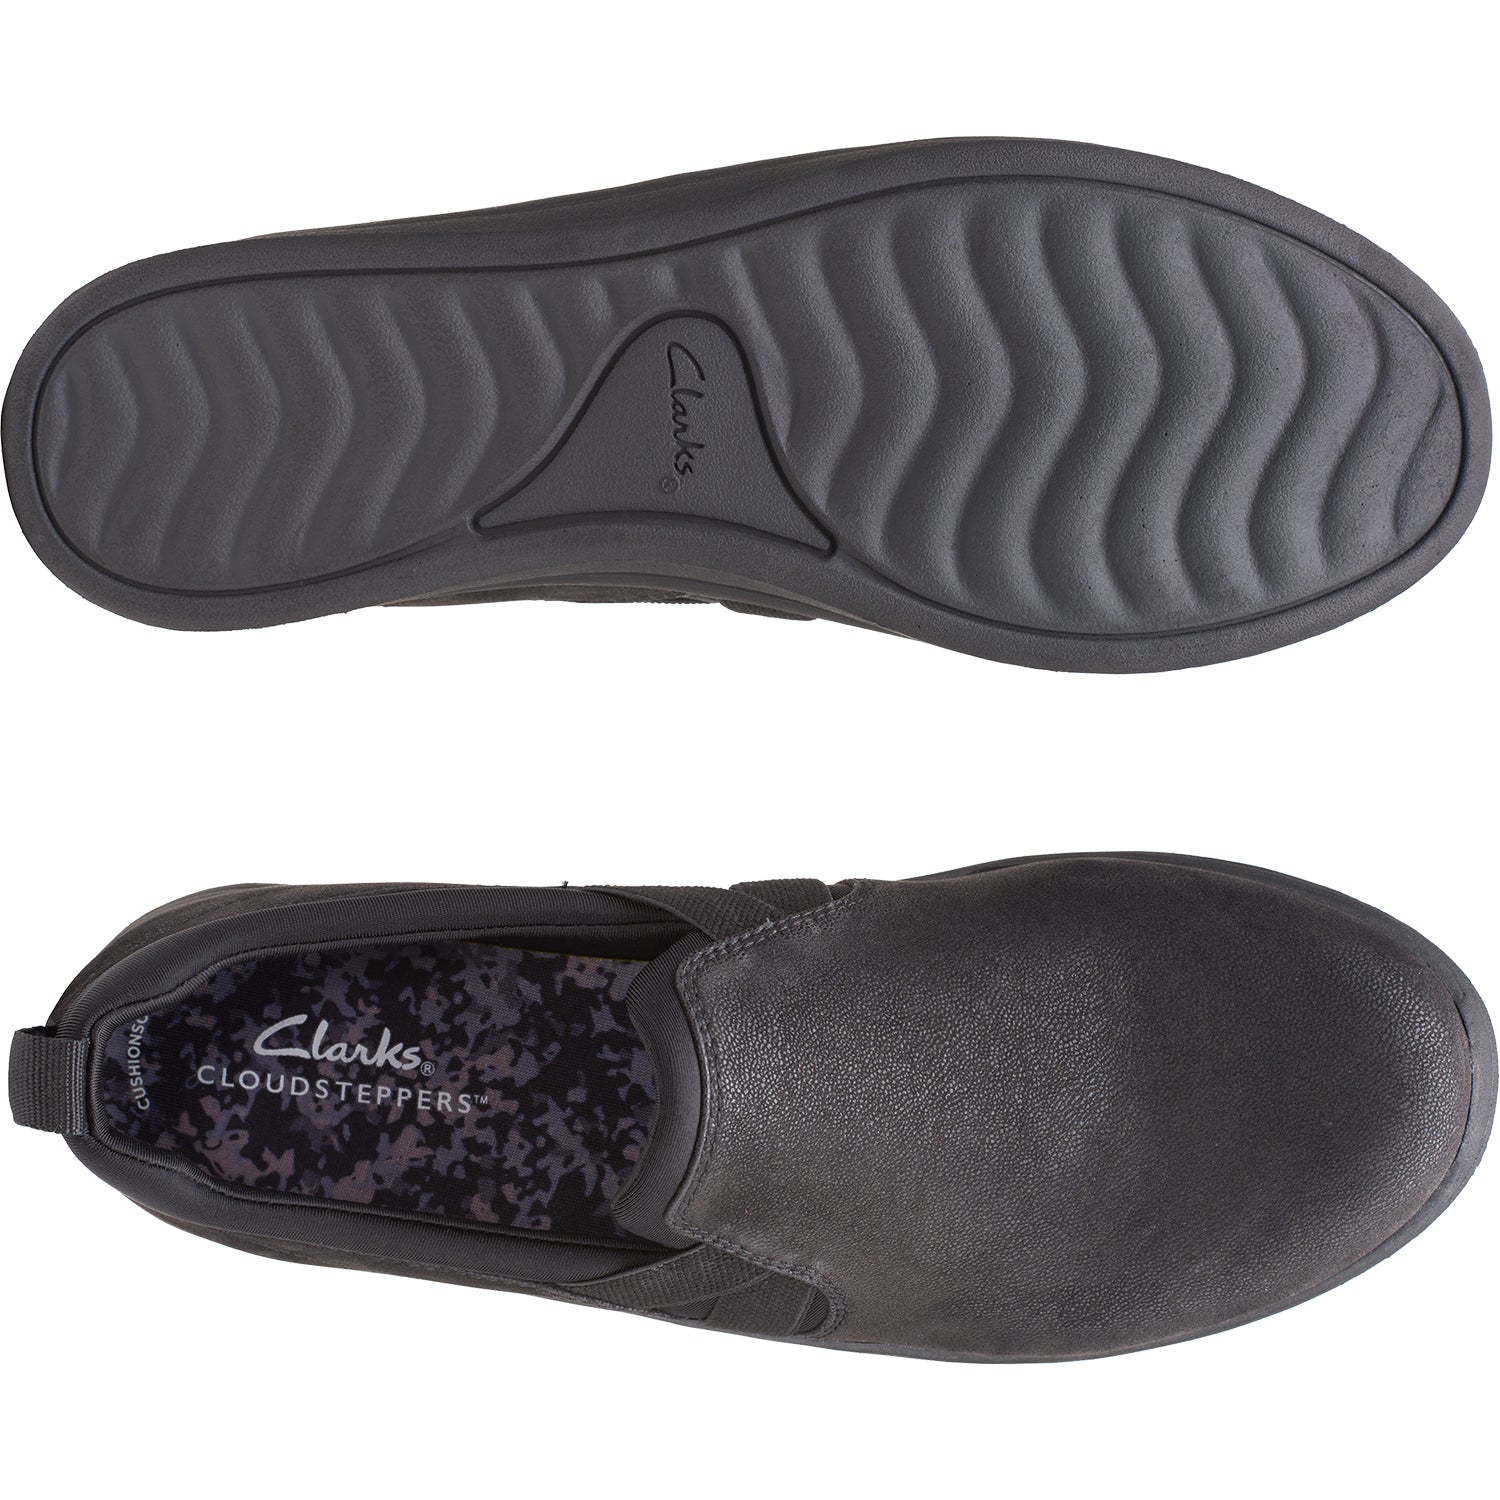 Clarks Breeze Bali | Women's Slip-On Shoes | Footwear etc.